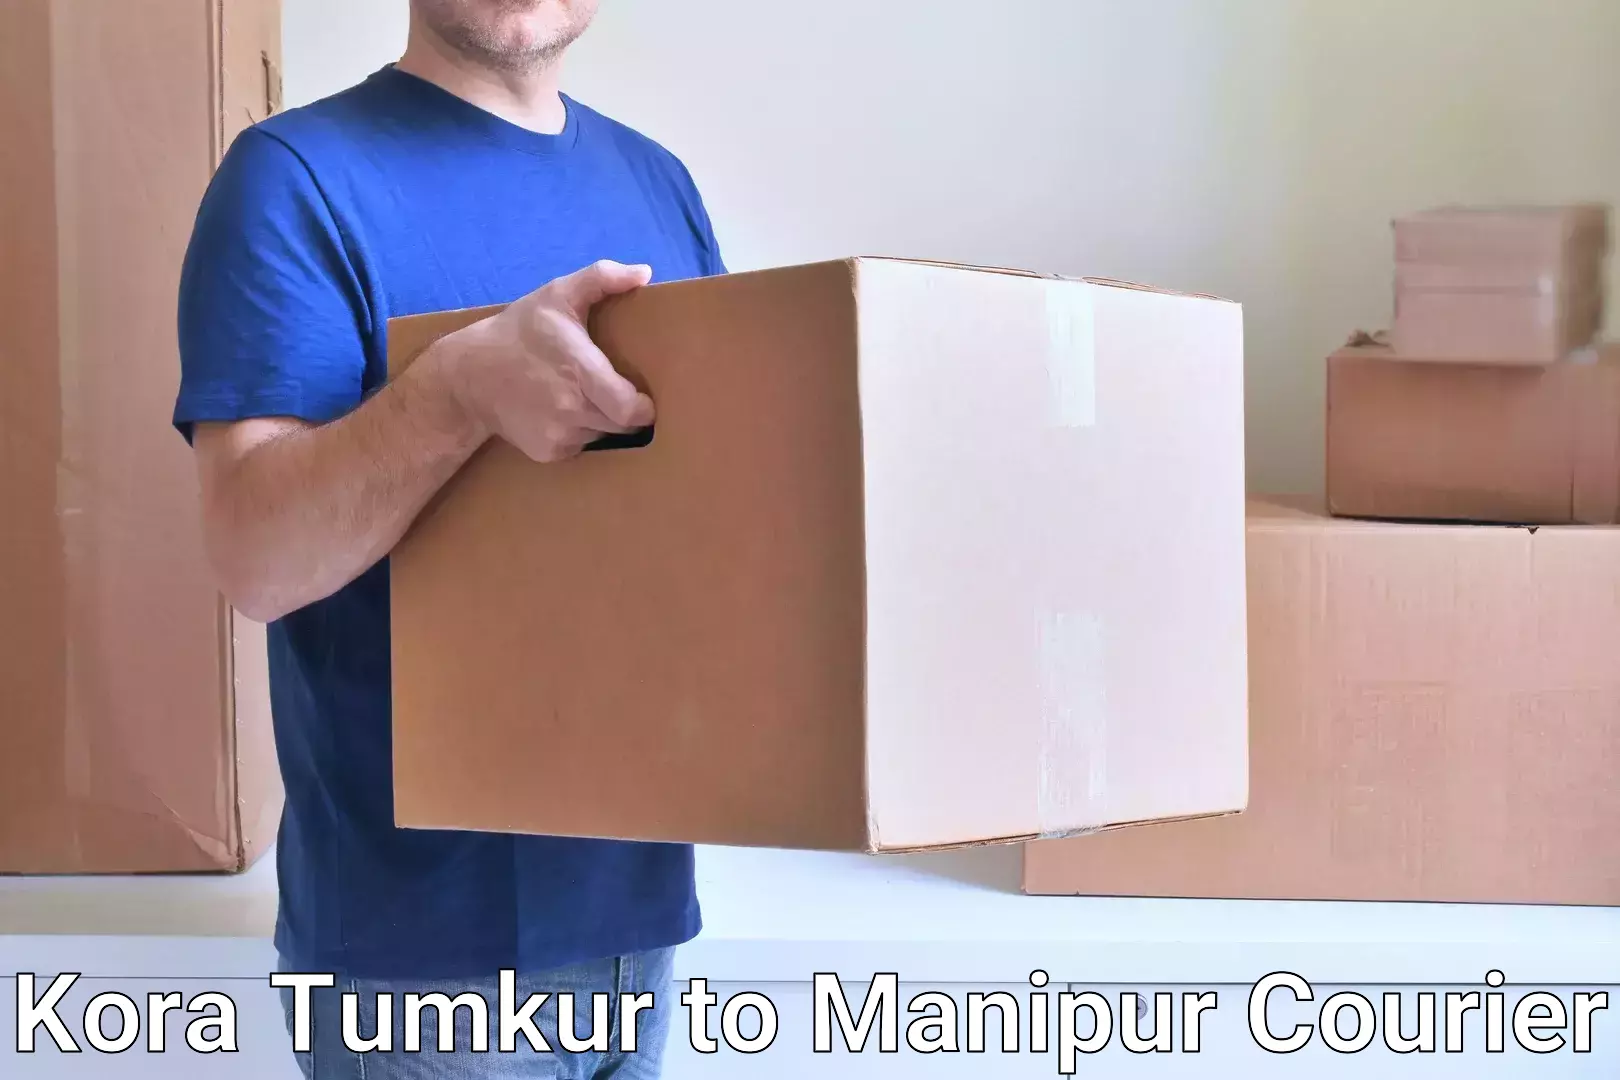 Comprehensive shipping strategies Kora Tumkur to Manipur